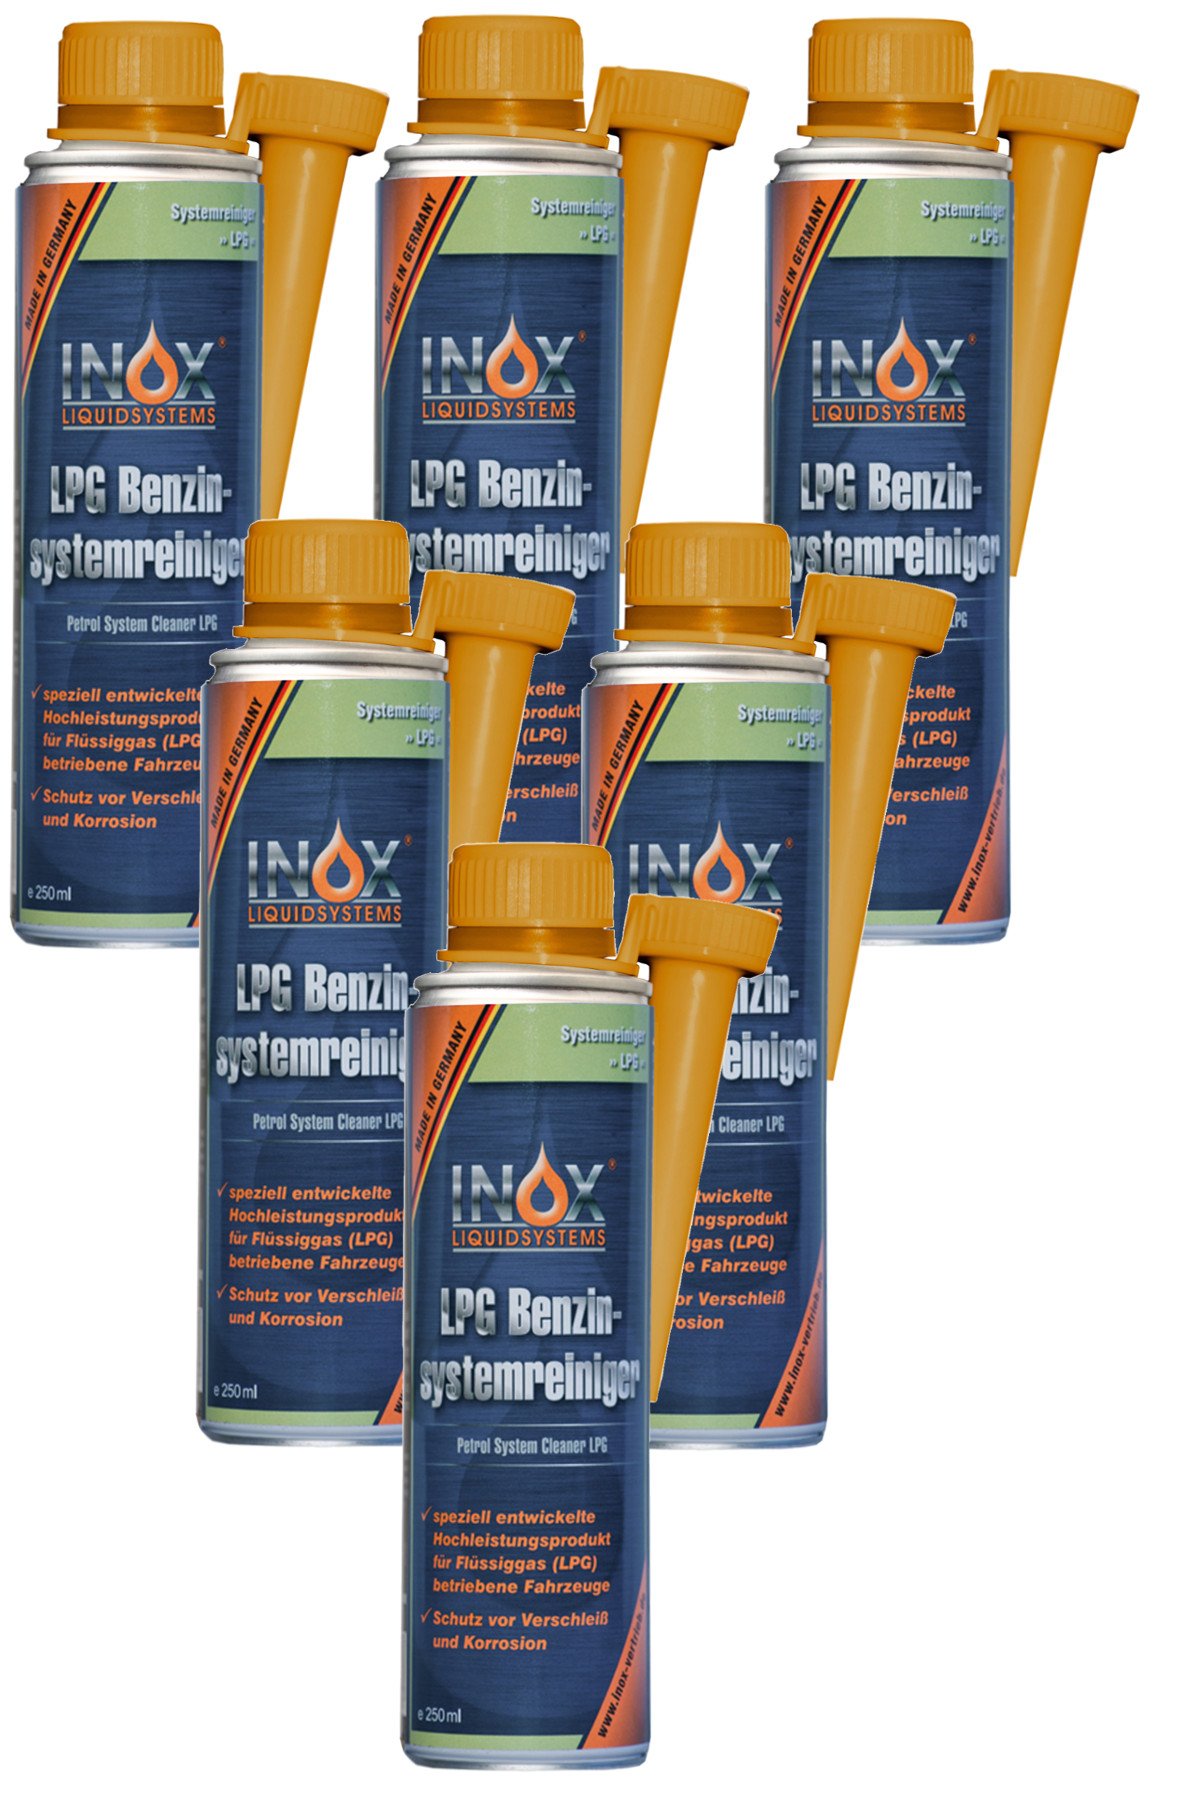 INOX® LPG Benzinsystemreiniger Additiv, 6 x 250ml - Systemreiniger für Autos mit Gasanlage von INOX-LIQUIDSYSTEMS